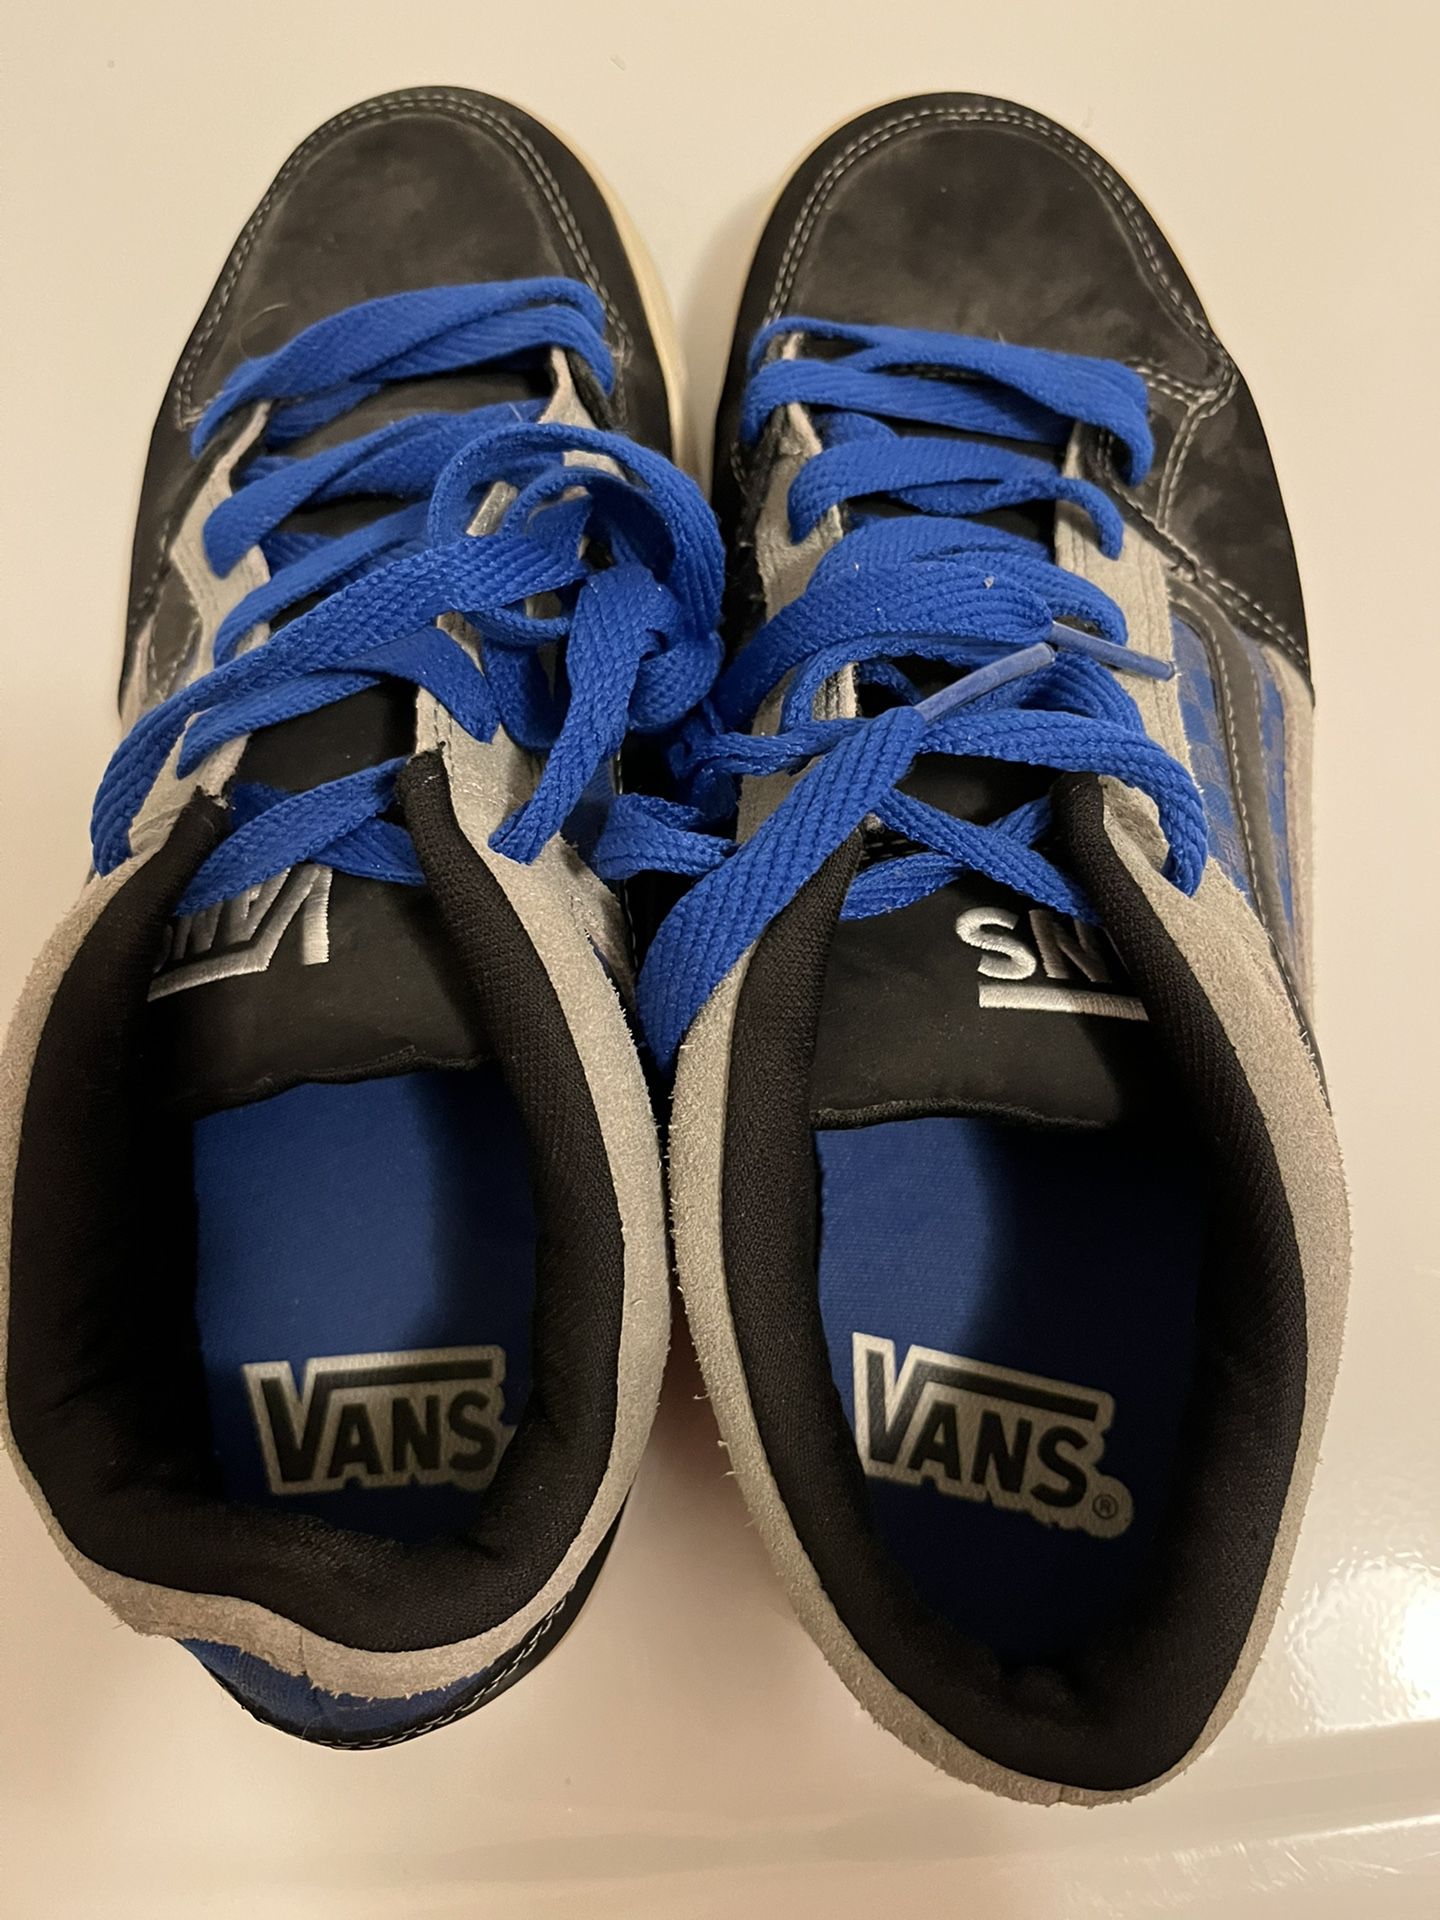 Vans Men Shoes Size 9